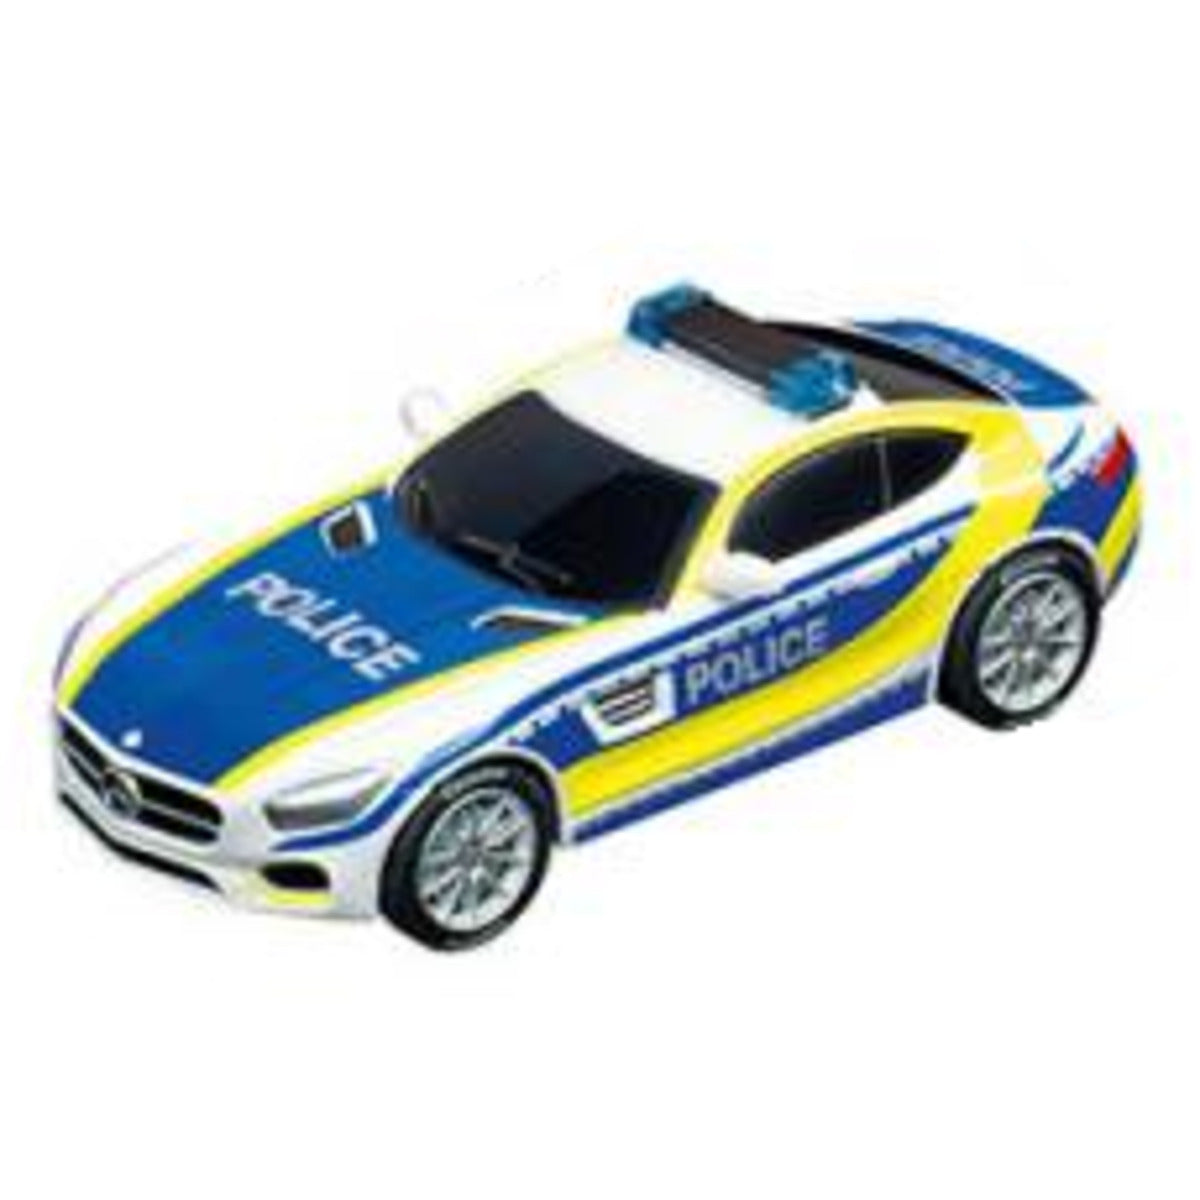 P&S Sound & Light Police, 1 Polizeiauto, 4-fach sortiert